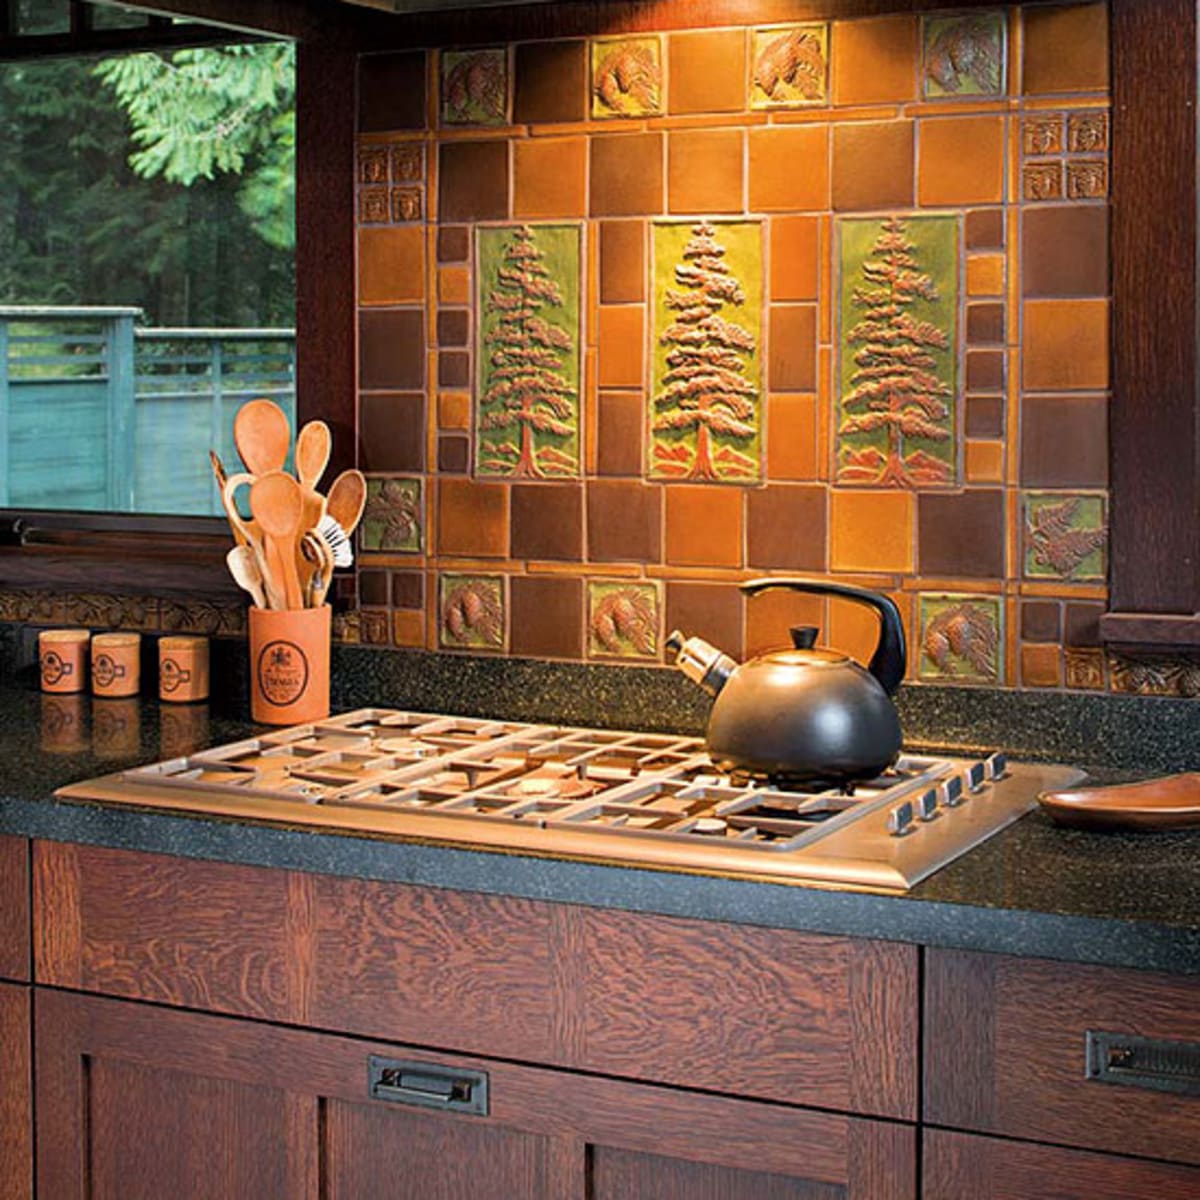 Artful Tile For Kitchen Bath Design For The Arts Crafts House Arts Crafts Homes Online